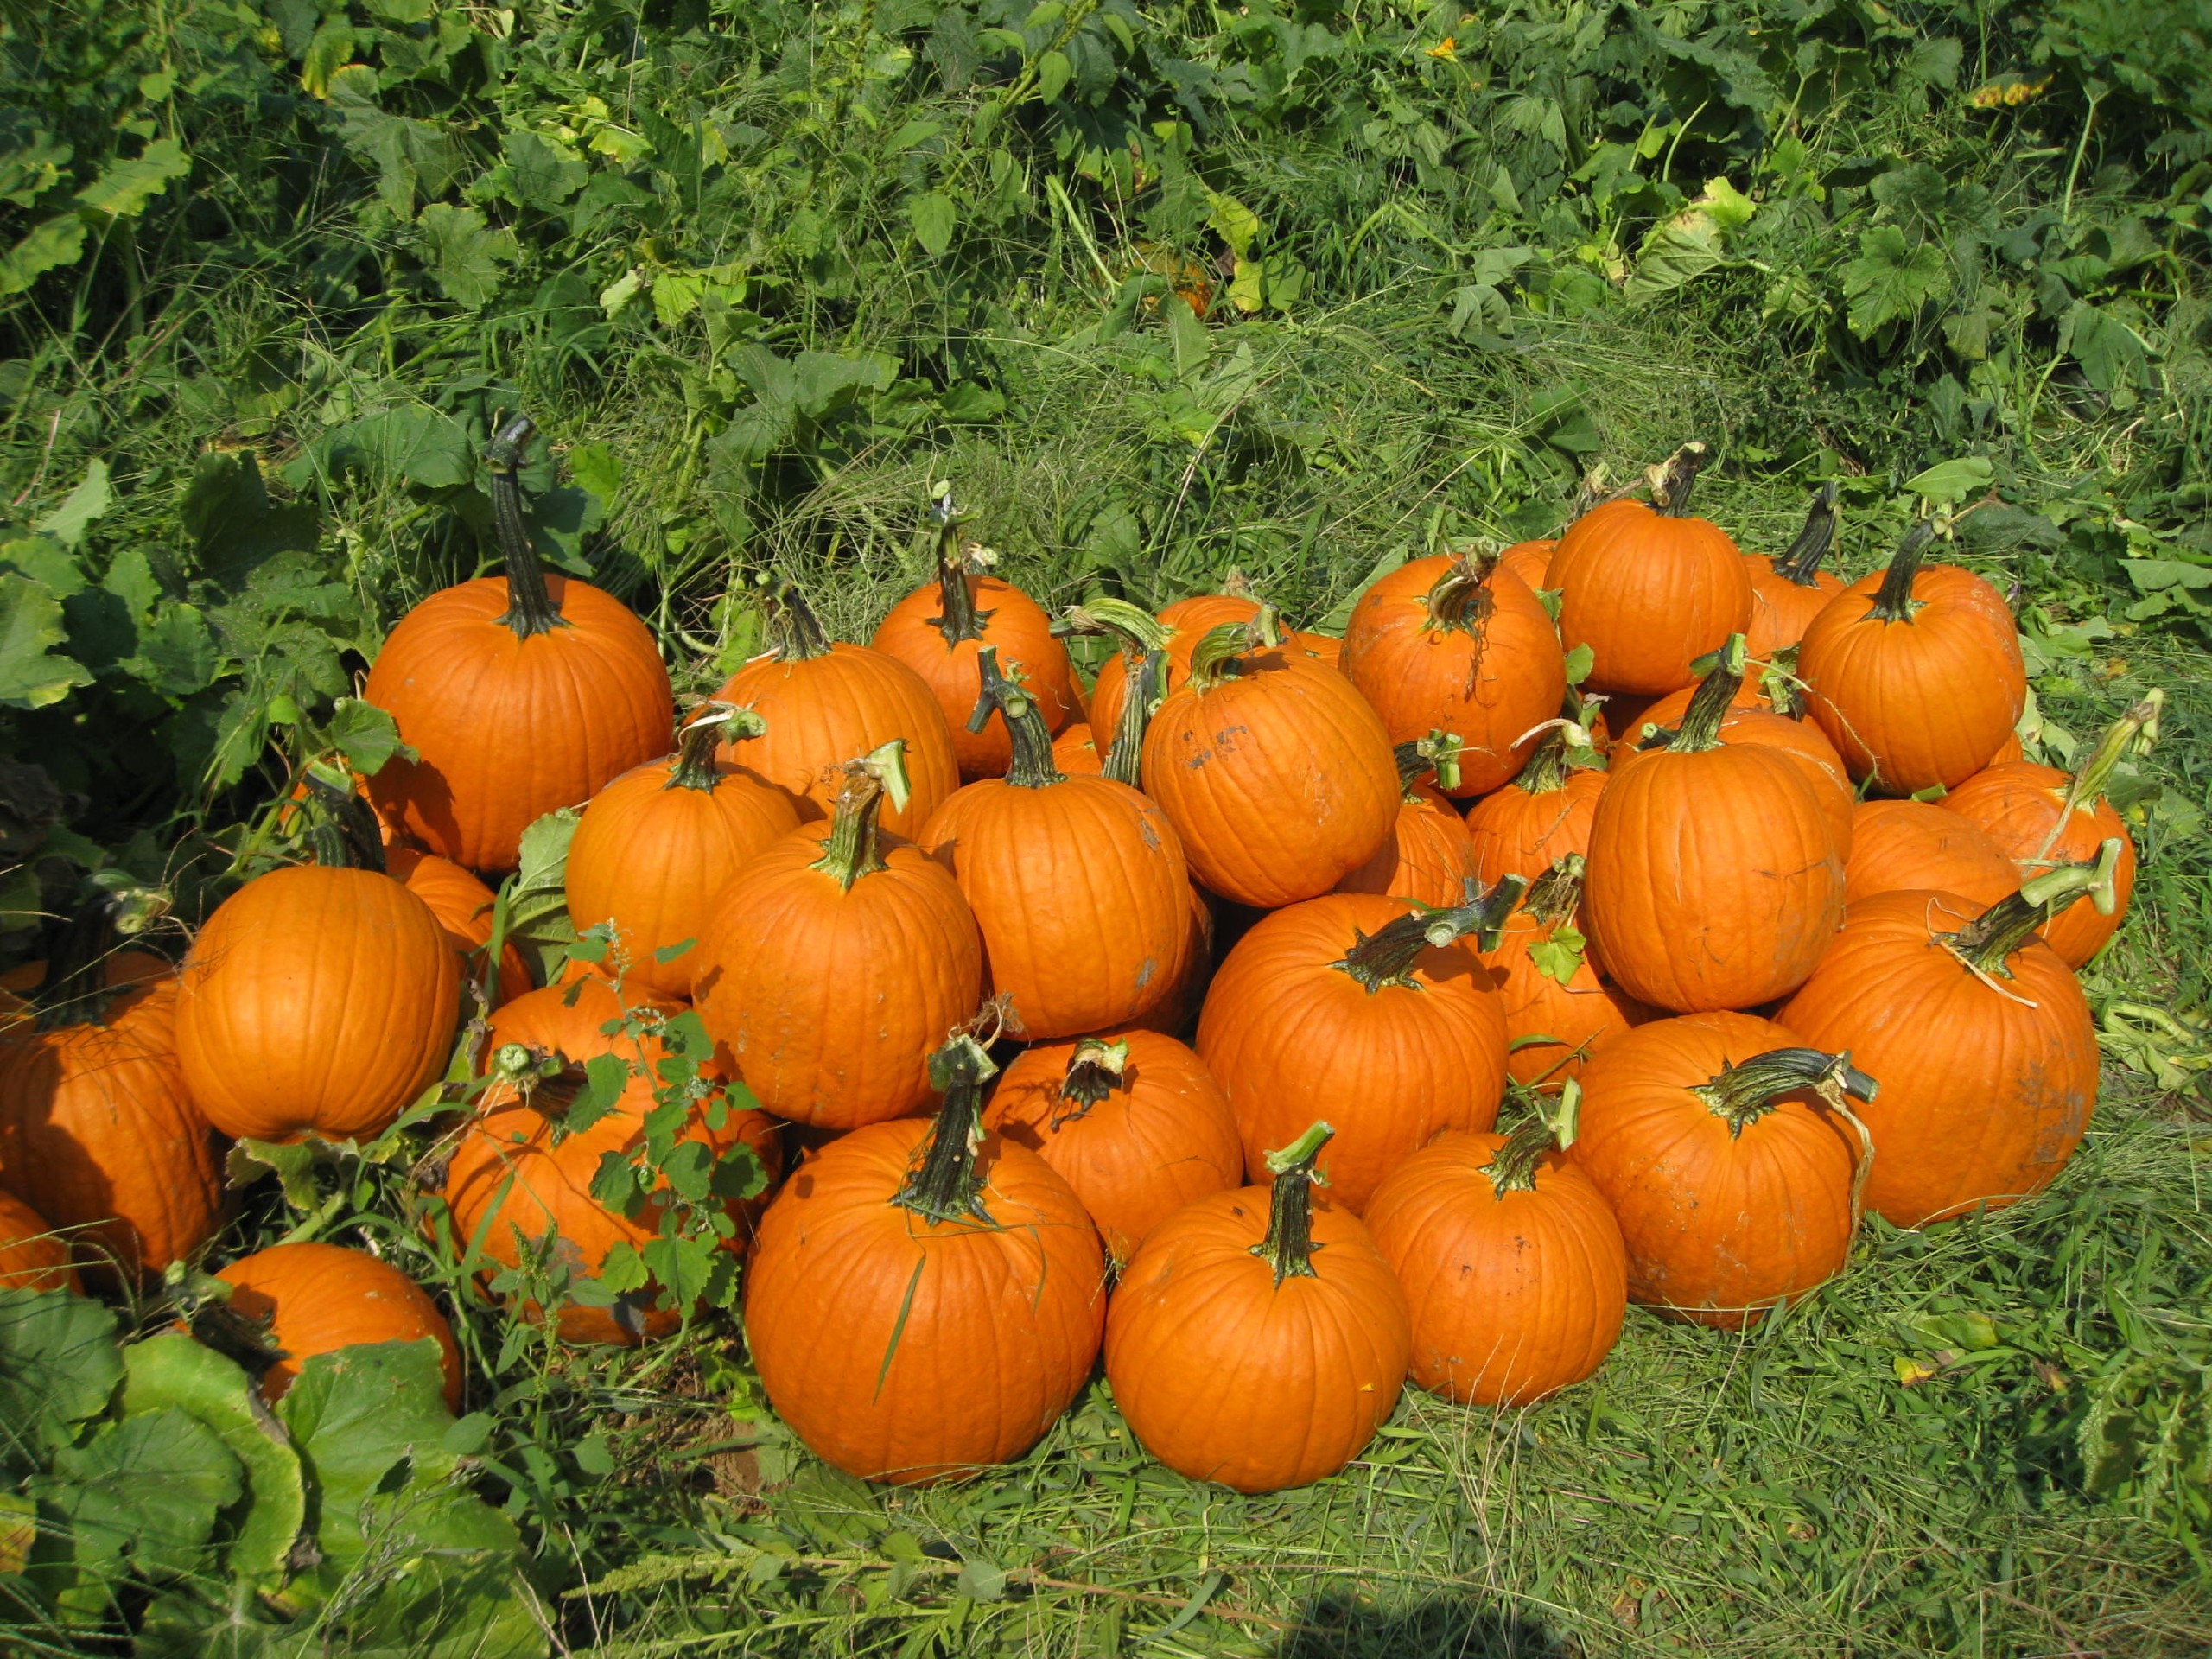 Pumpkins ready